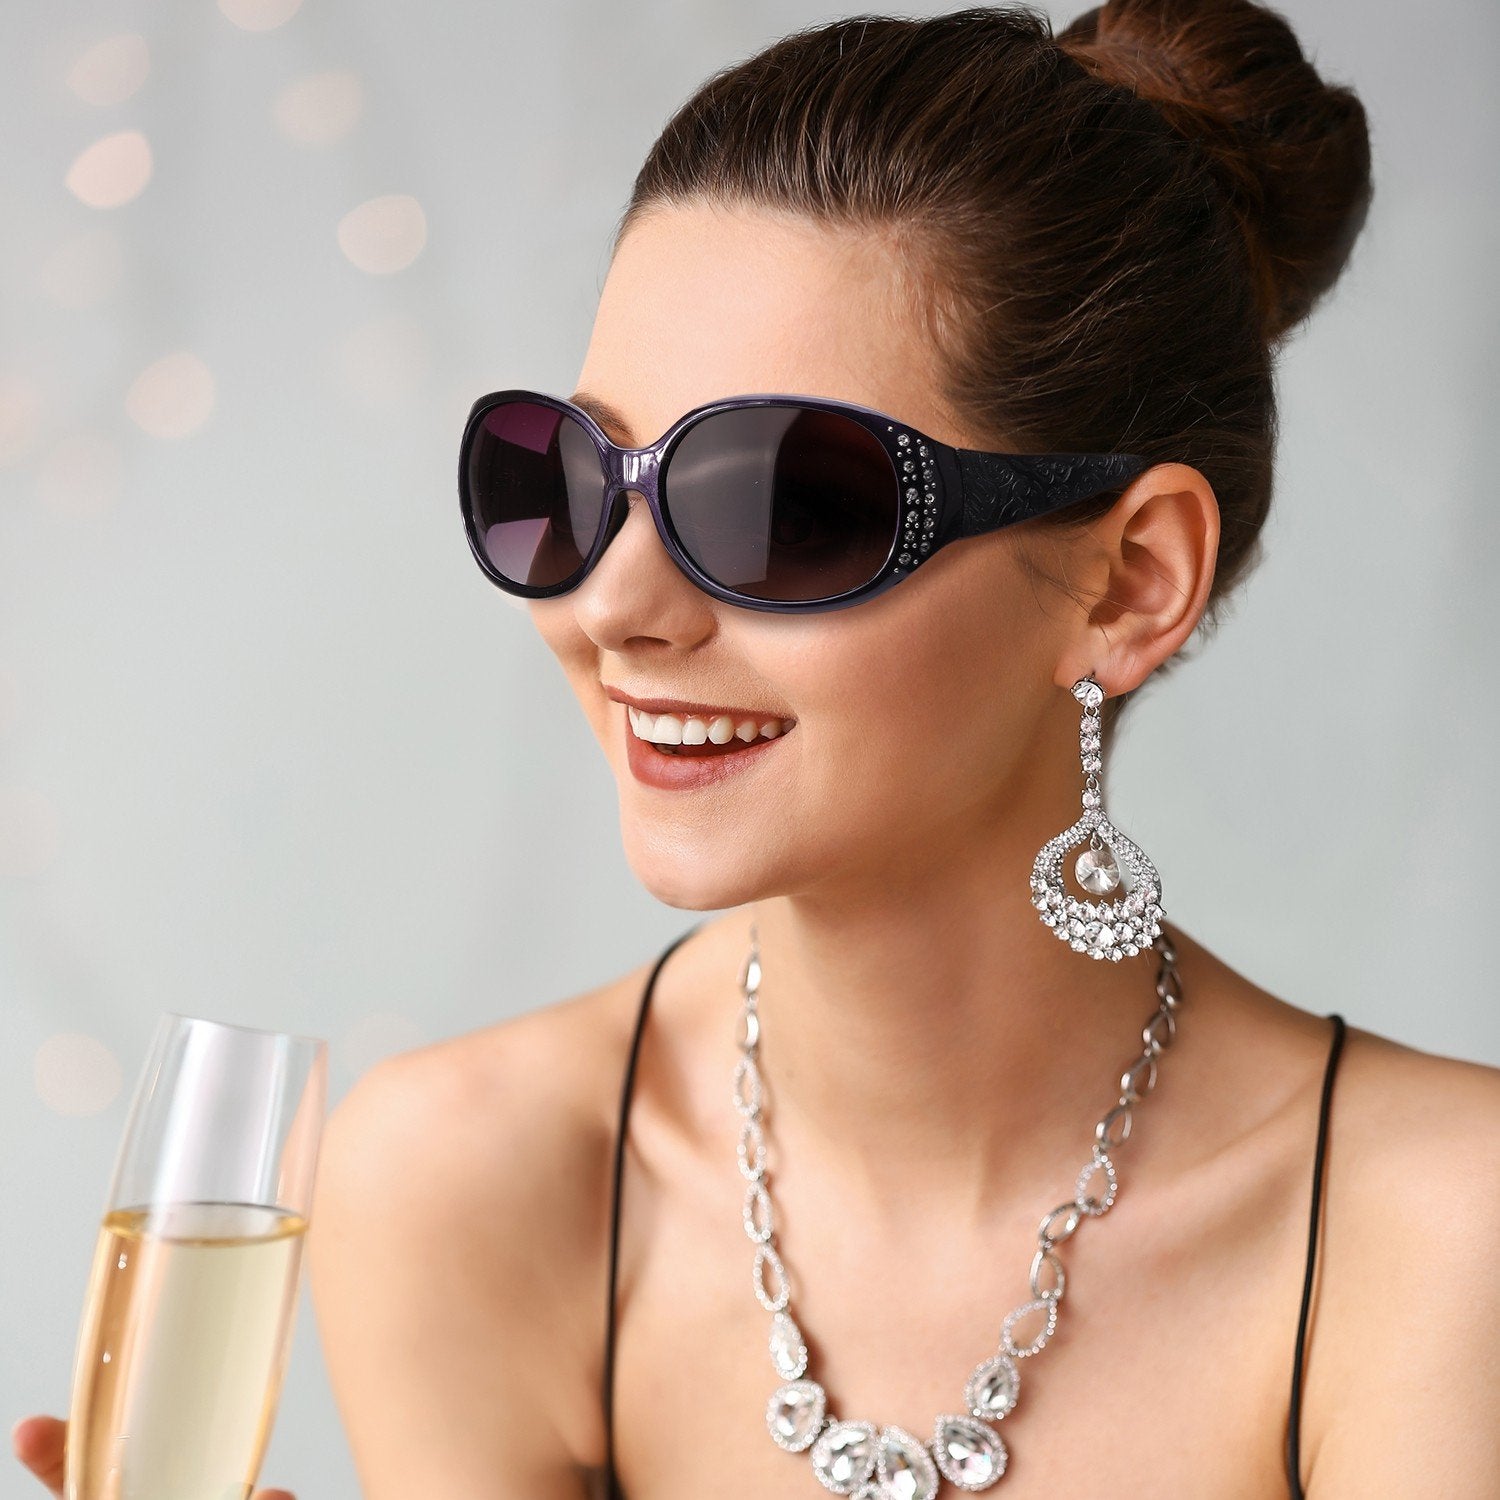 LVIOE for Rx Sun Women-Rhinebeck Glasses Prescription Sunglasses